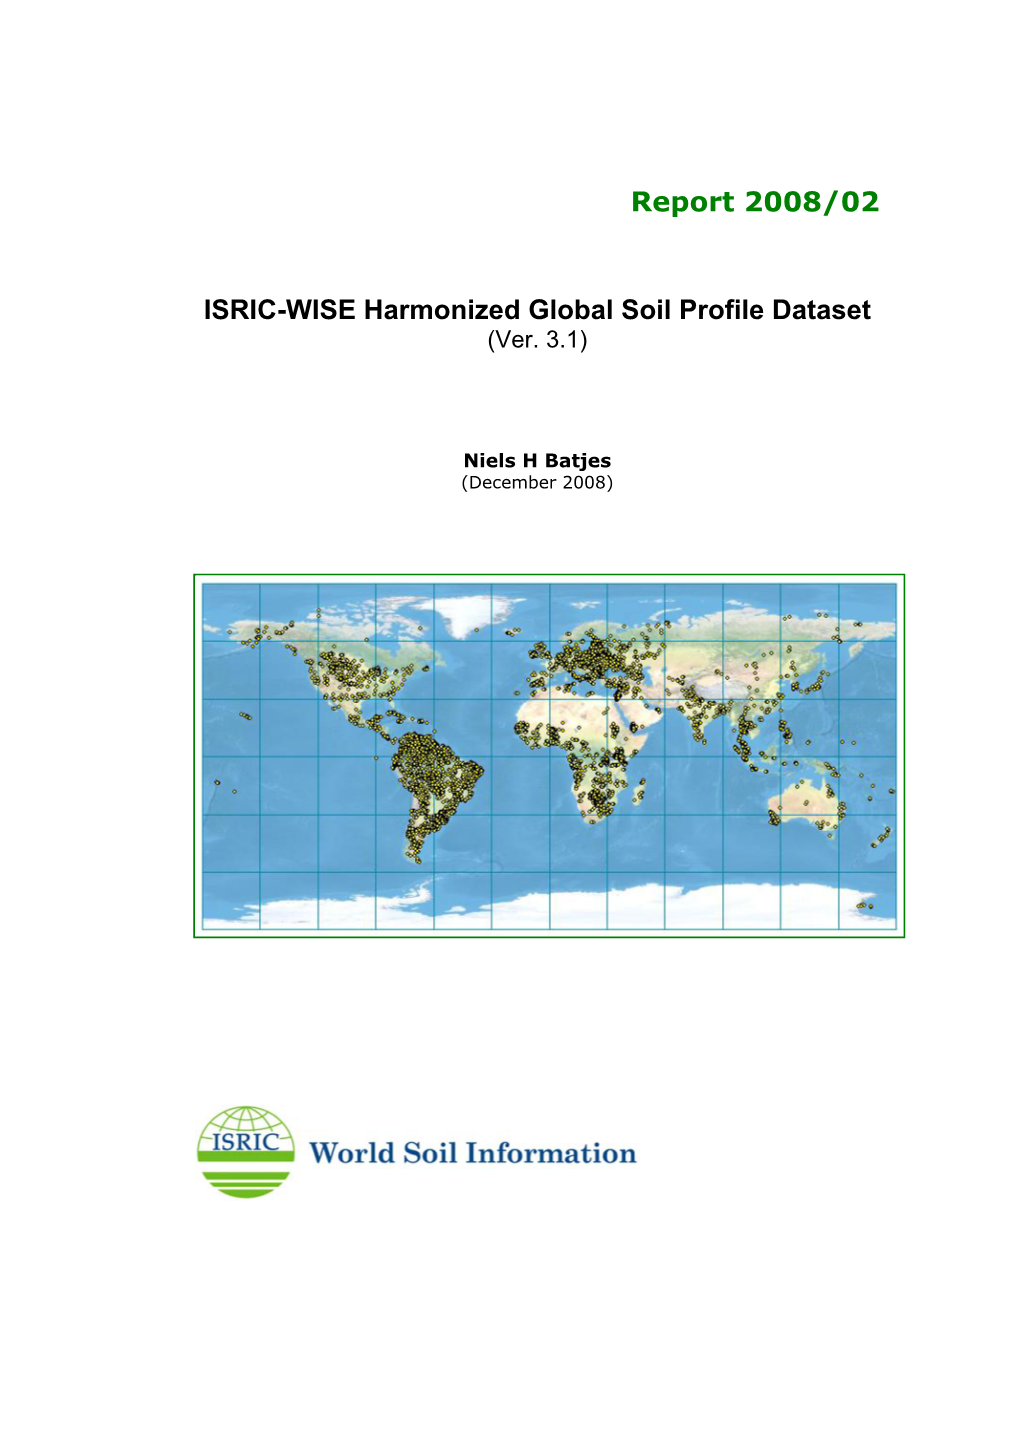 ISRIC-WISE Harmonized Global Soil Profile Dataset (Ver. 3.1)